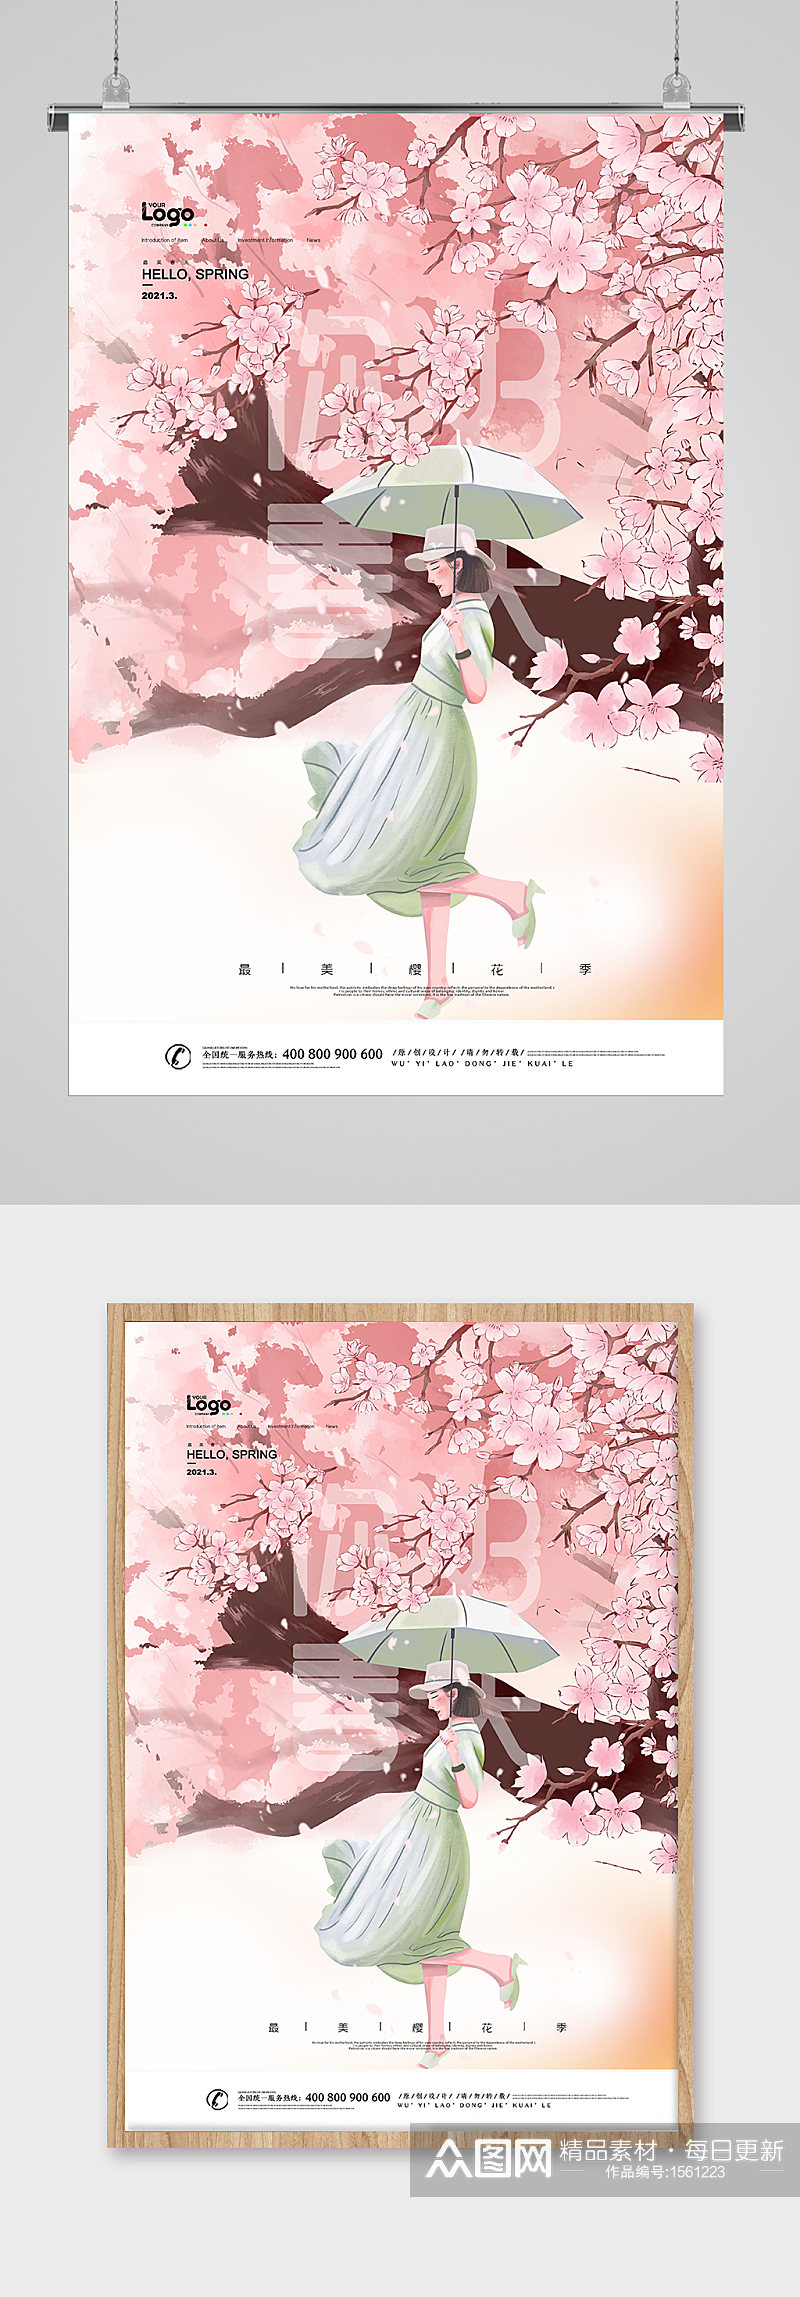 春季赏樱花宣传海报素材